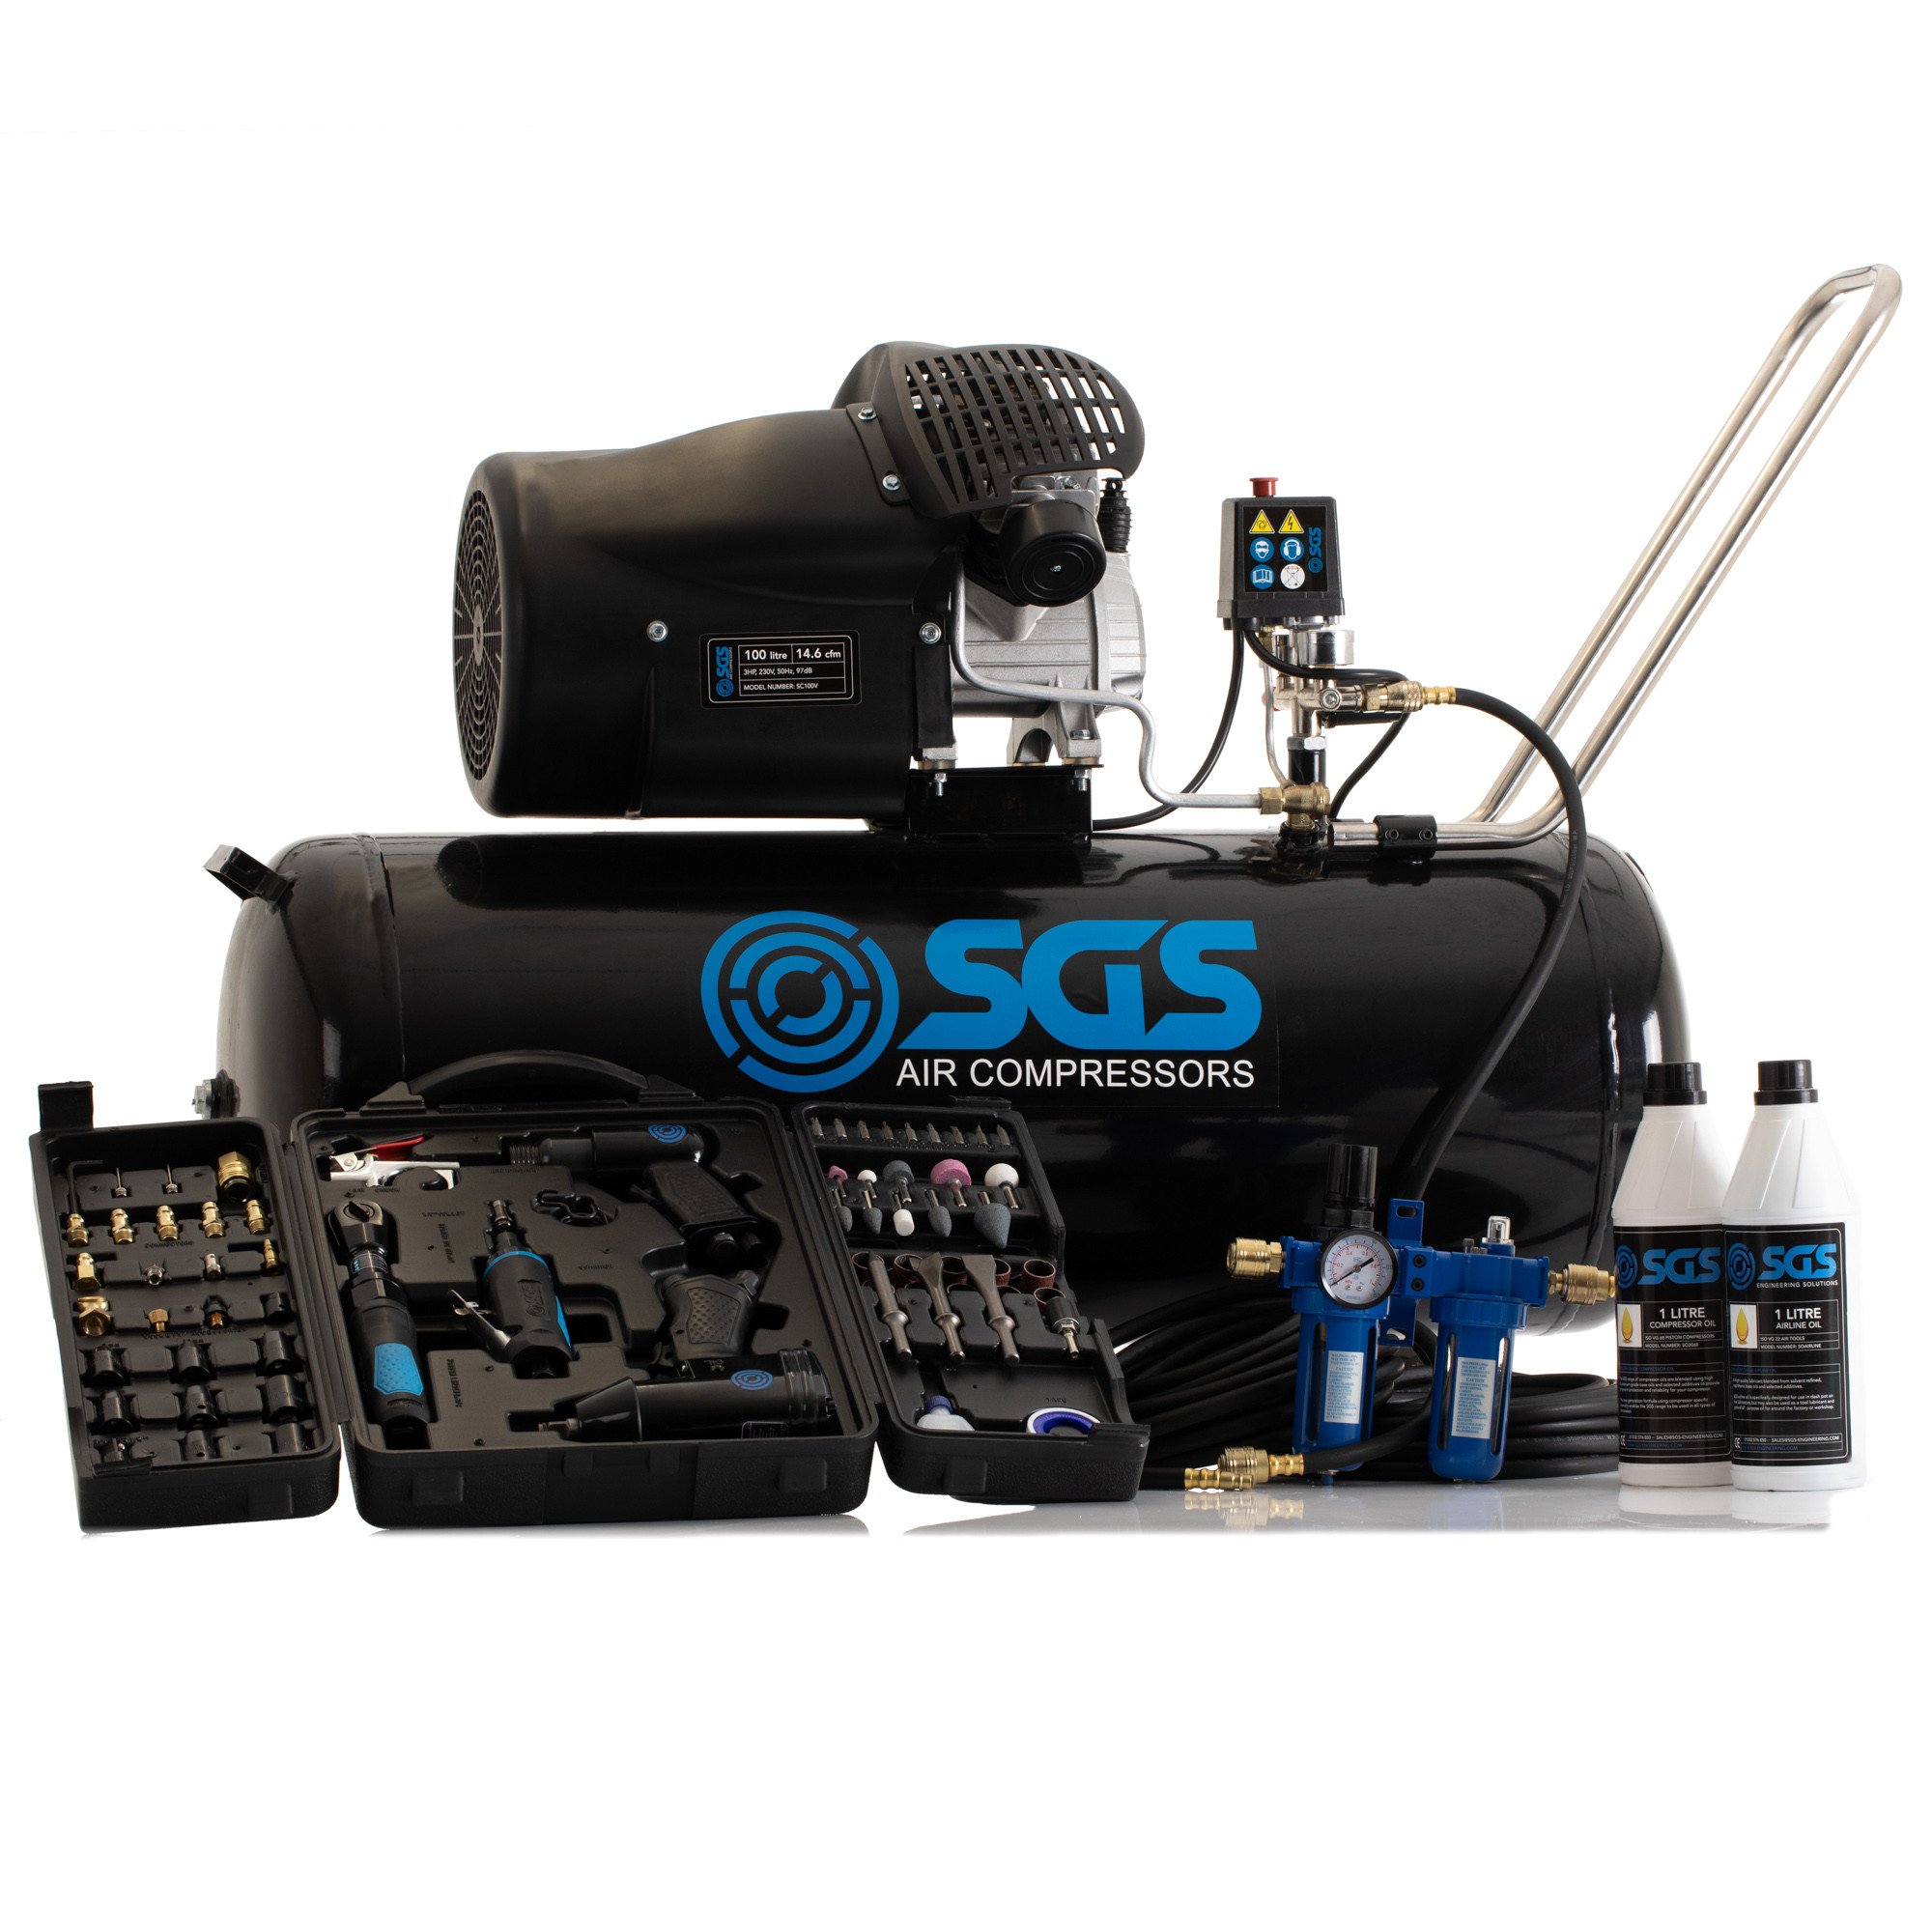 SGS 100升直接驱动空气压缩机空气& 71台电脑工具包3.0 - 14.6 cfm惠普100 l